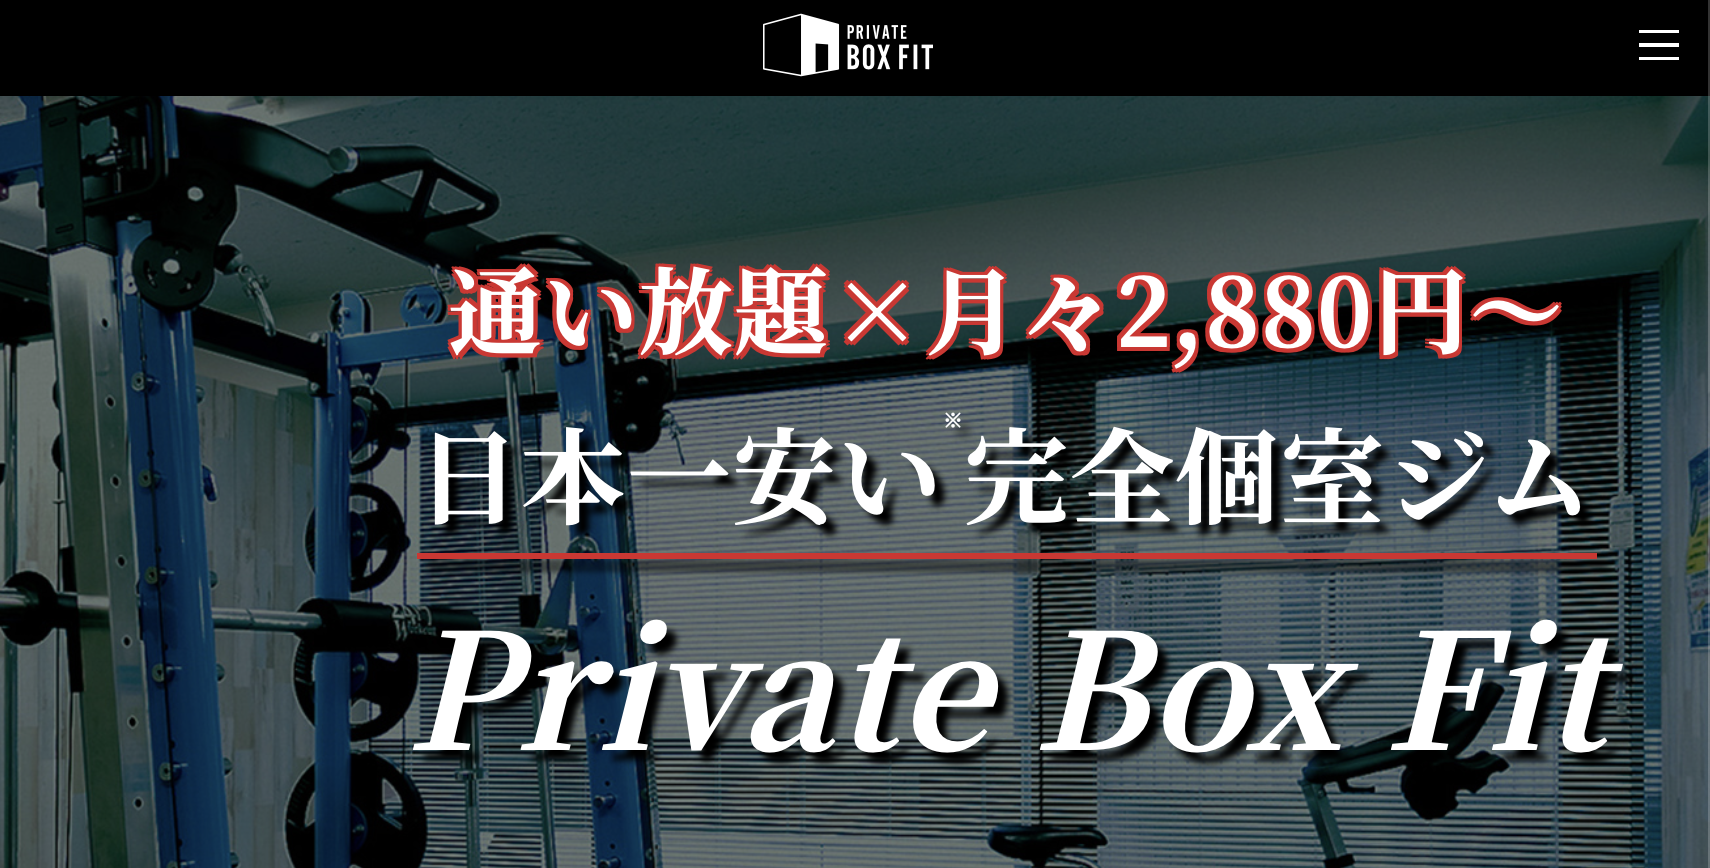 11.Private Box Fit